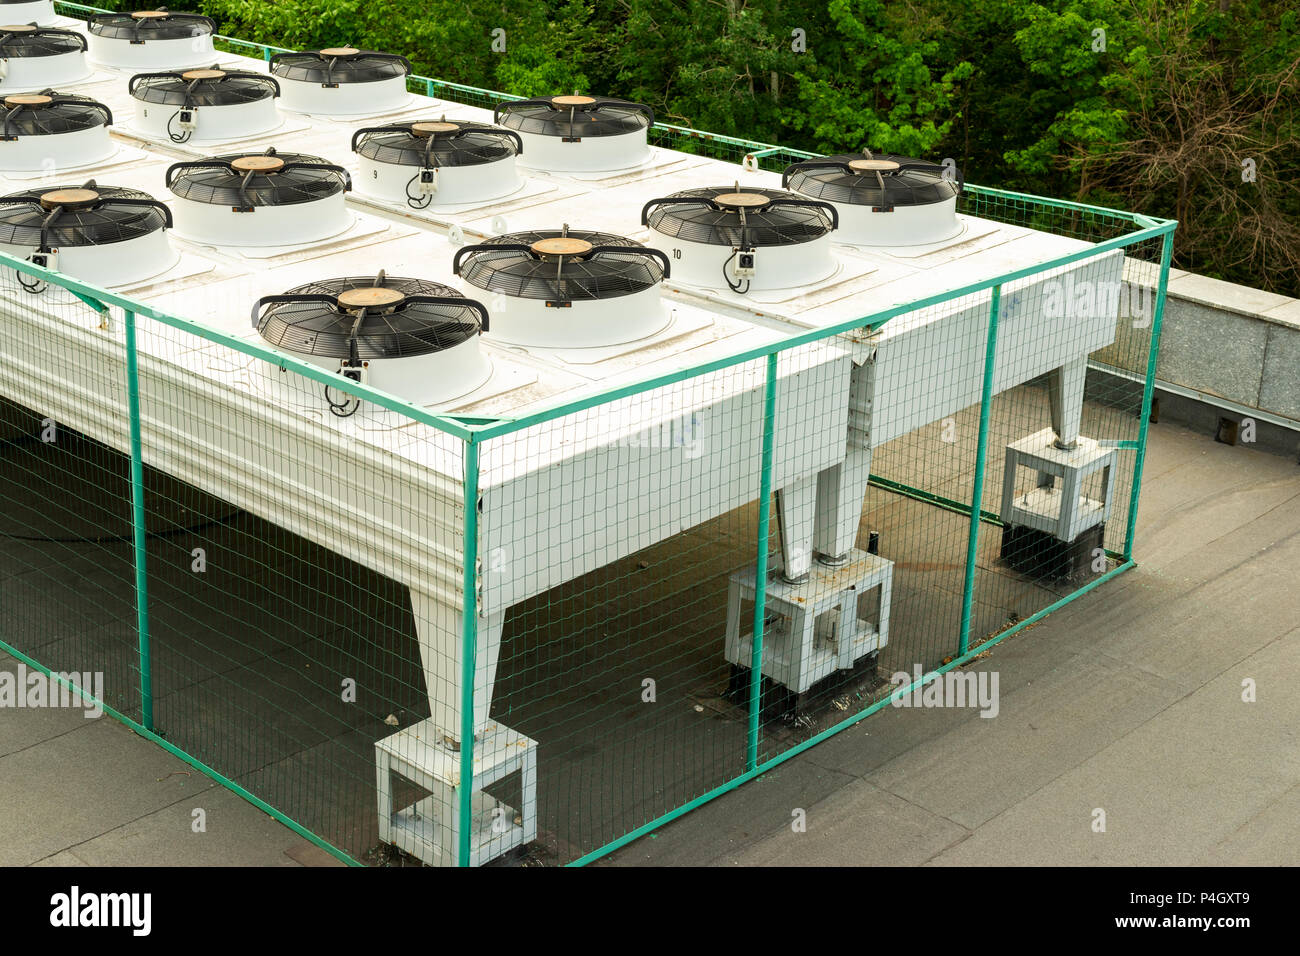 Außenbereich, Industrie - Klimaanlage auf dem Dach des Gebäudes  Stockfotografie - Alamy